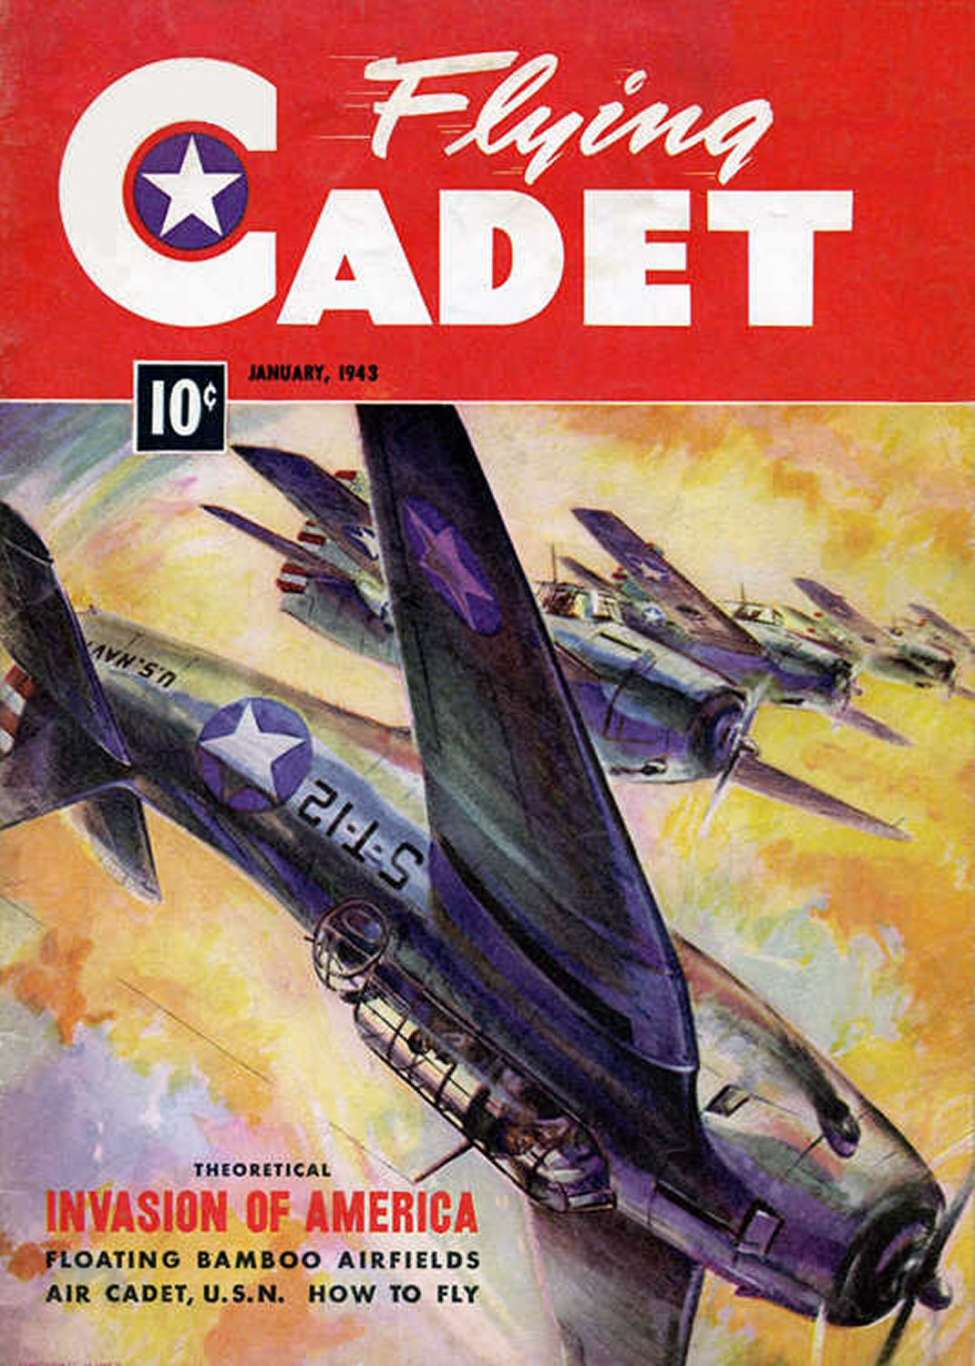 Book Cover For Flying Cadet Magazine v1 1